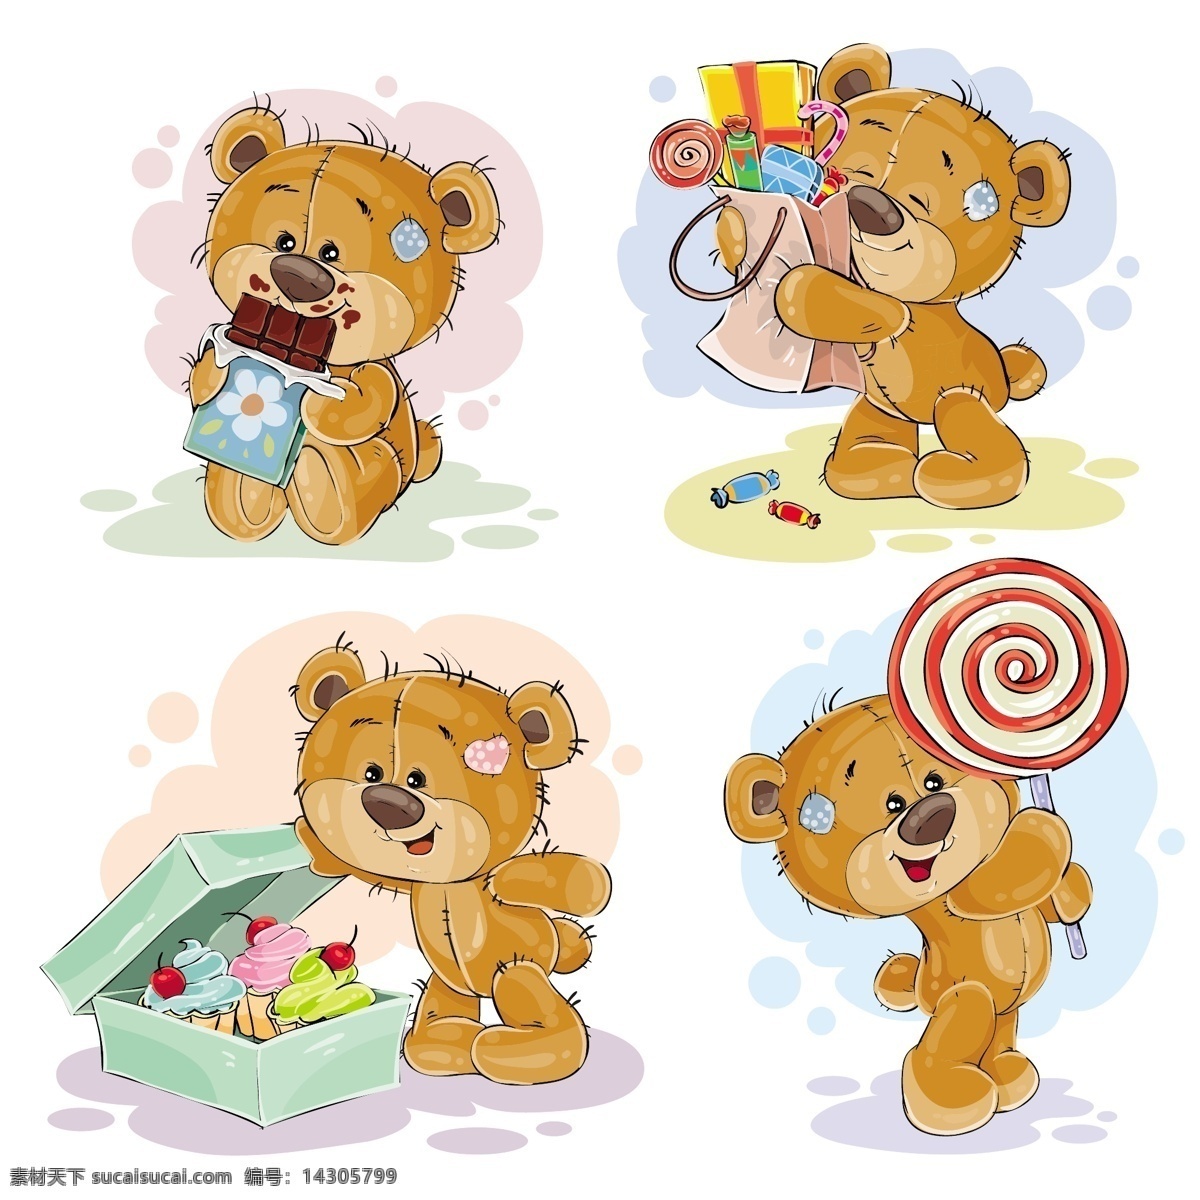 可爱 泰迪 熊 矢量 卡通 巧克力 糖果 棒棒糖 礼物 礼盒 纸杯蛋糕 食物 泰迪熊